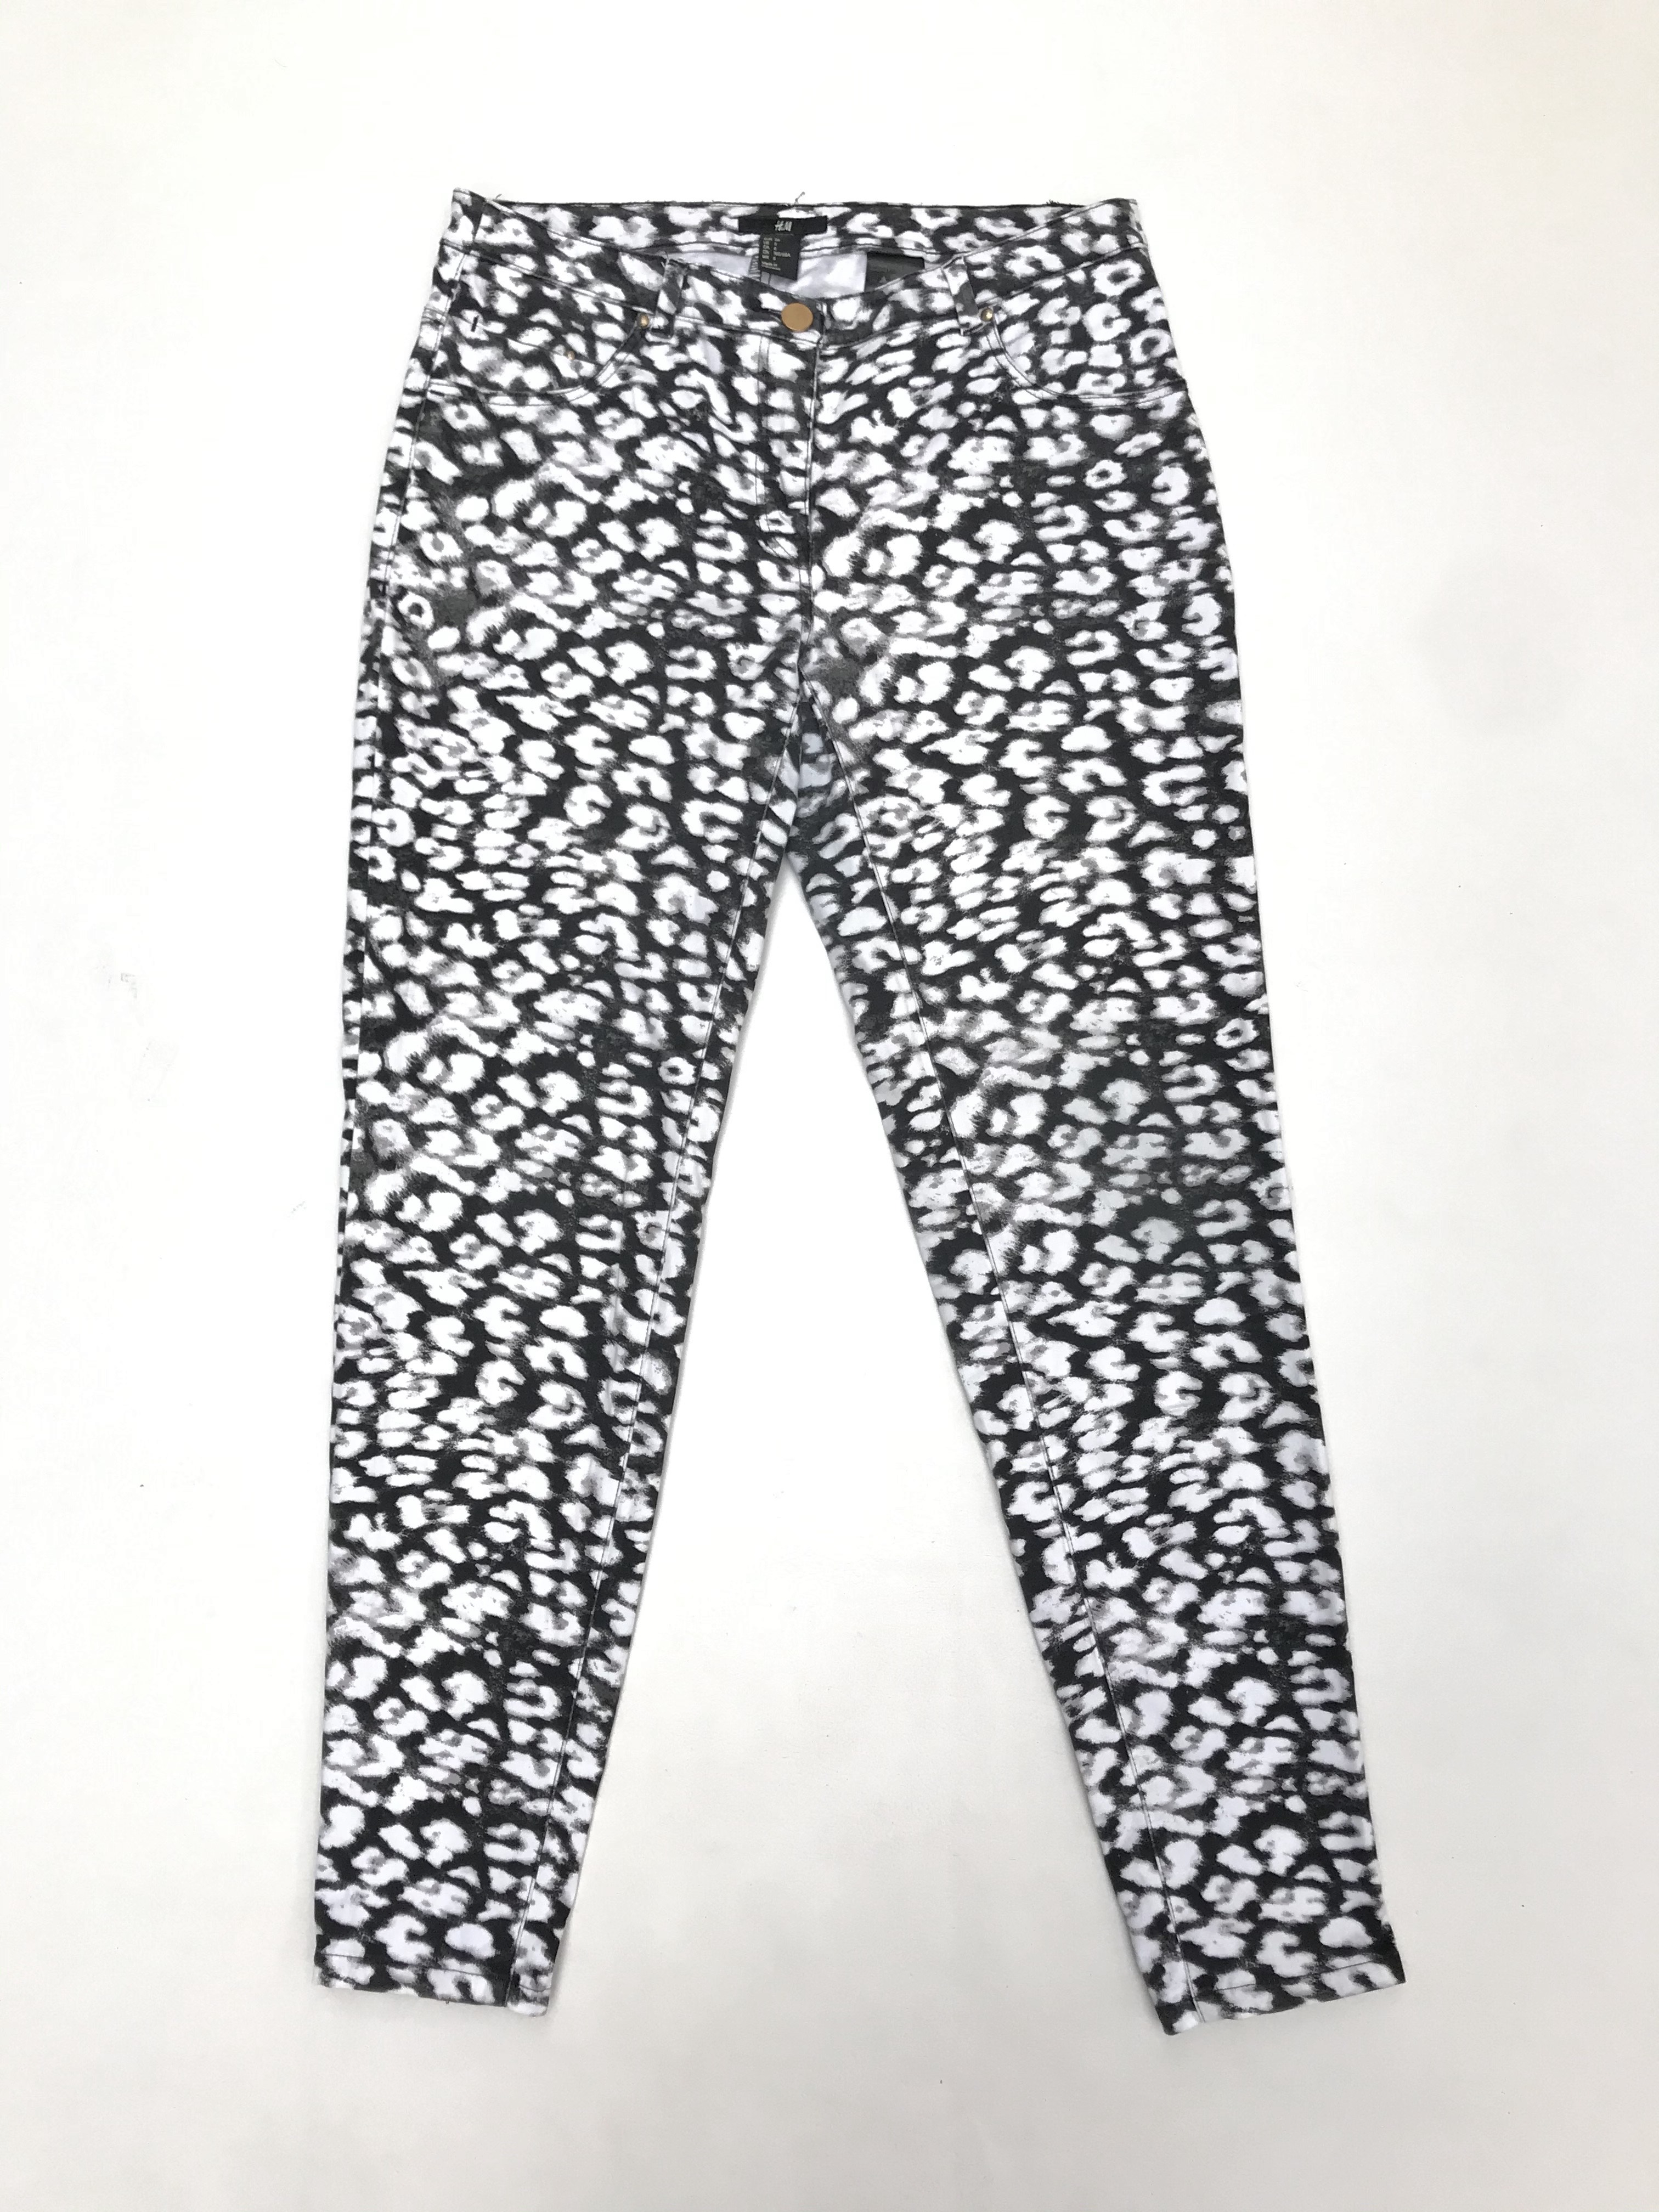 Pantalón H&M estampado animal print blanco y gris, 98% algodón, 5 bolsillos, corte pitillo con cierres en la basta